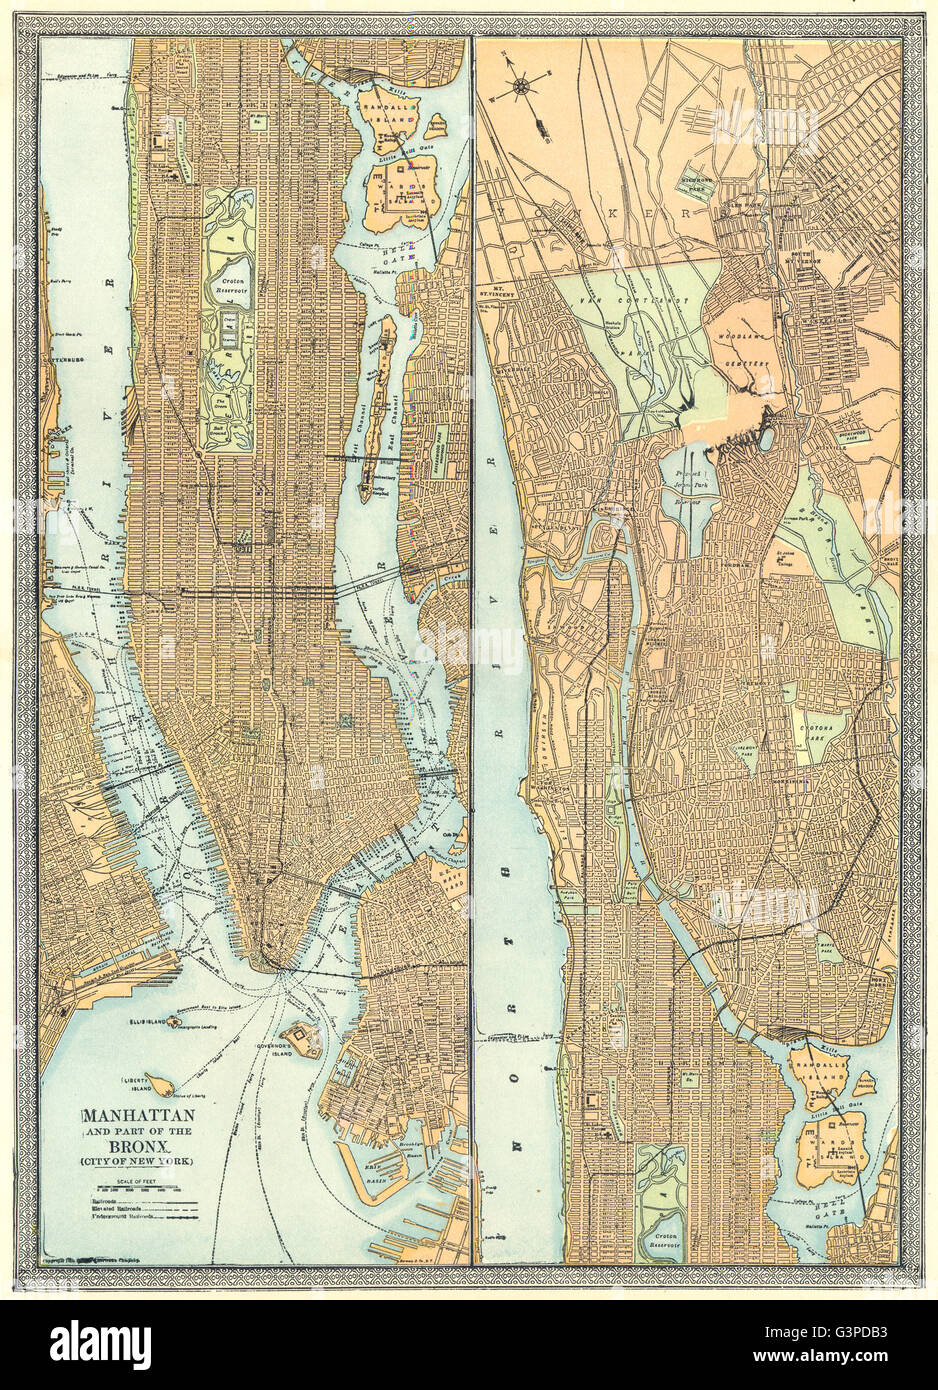 MANHATTAN town/city plan. Bronx. La ville de New York, 1907 carte antique Banque D'Images